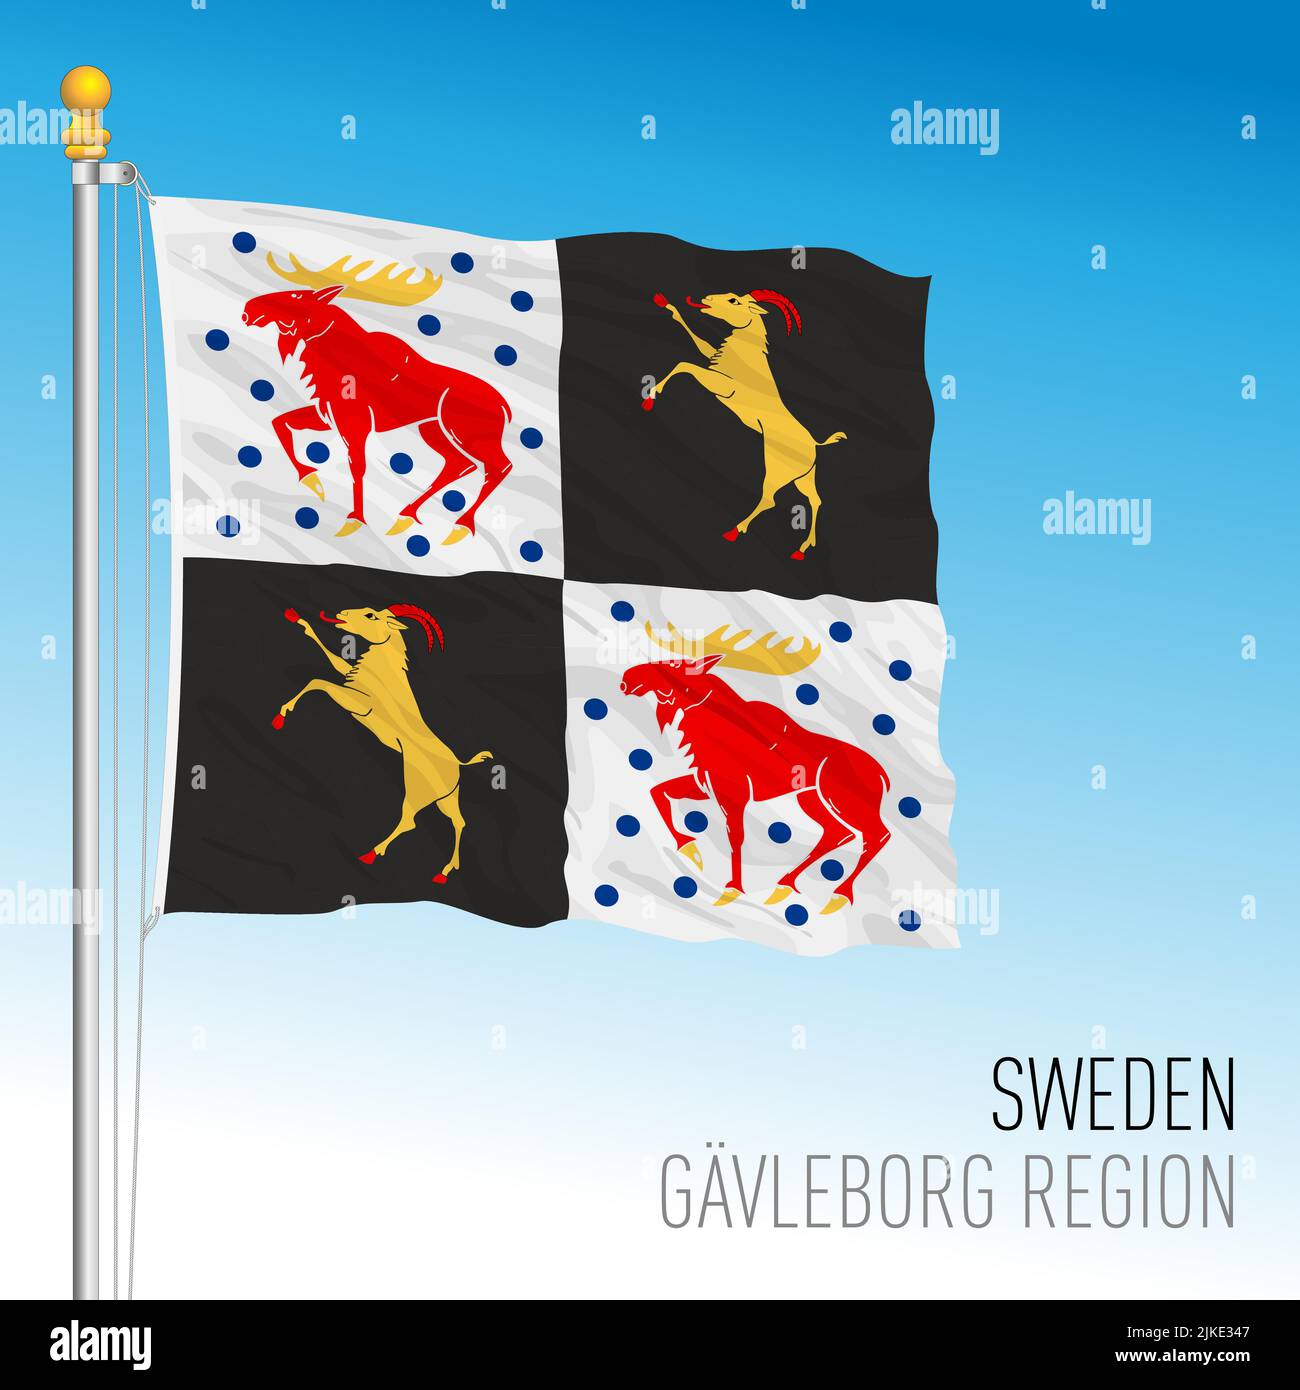 Pabellón regional del condado de Gavleborg, Reino de Suecia, ilustración de vectores Ilustración del Vector